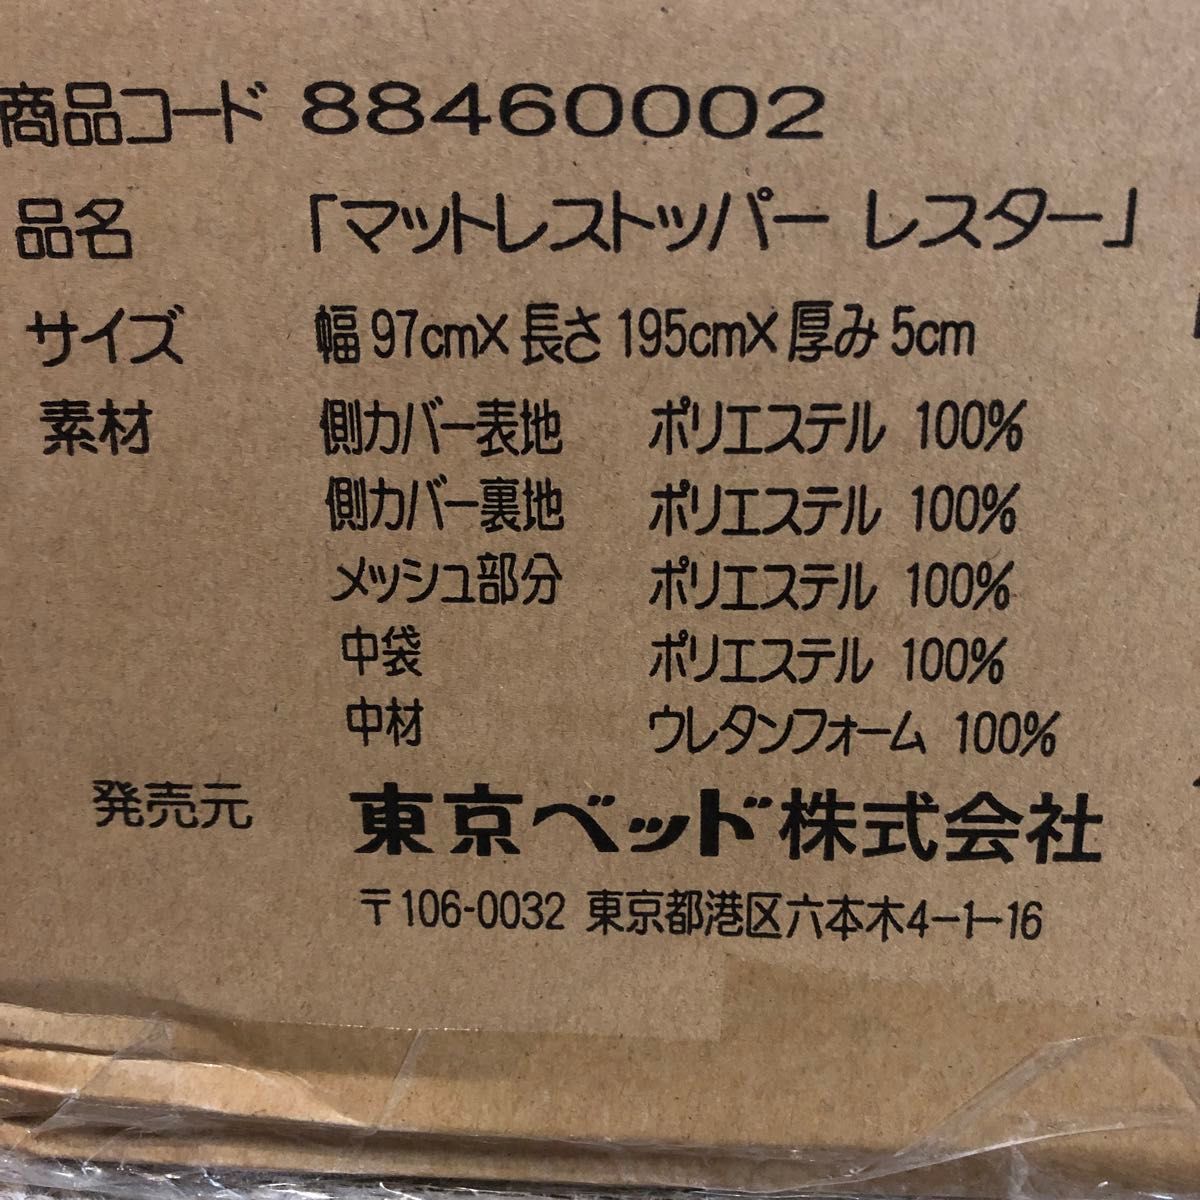 東京ベッドのマットレストッパー レスター